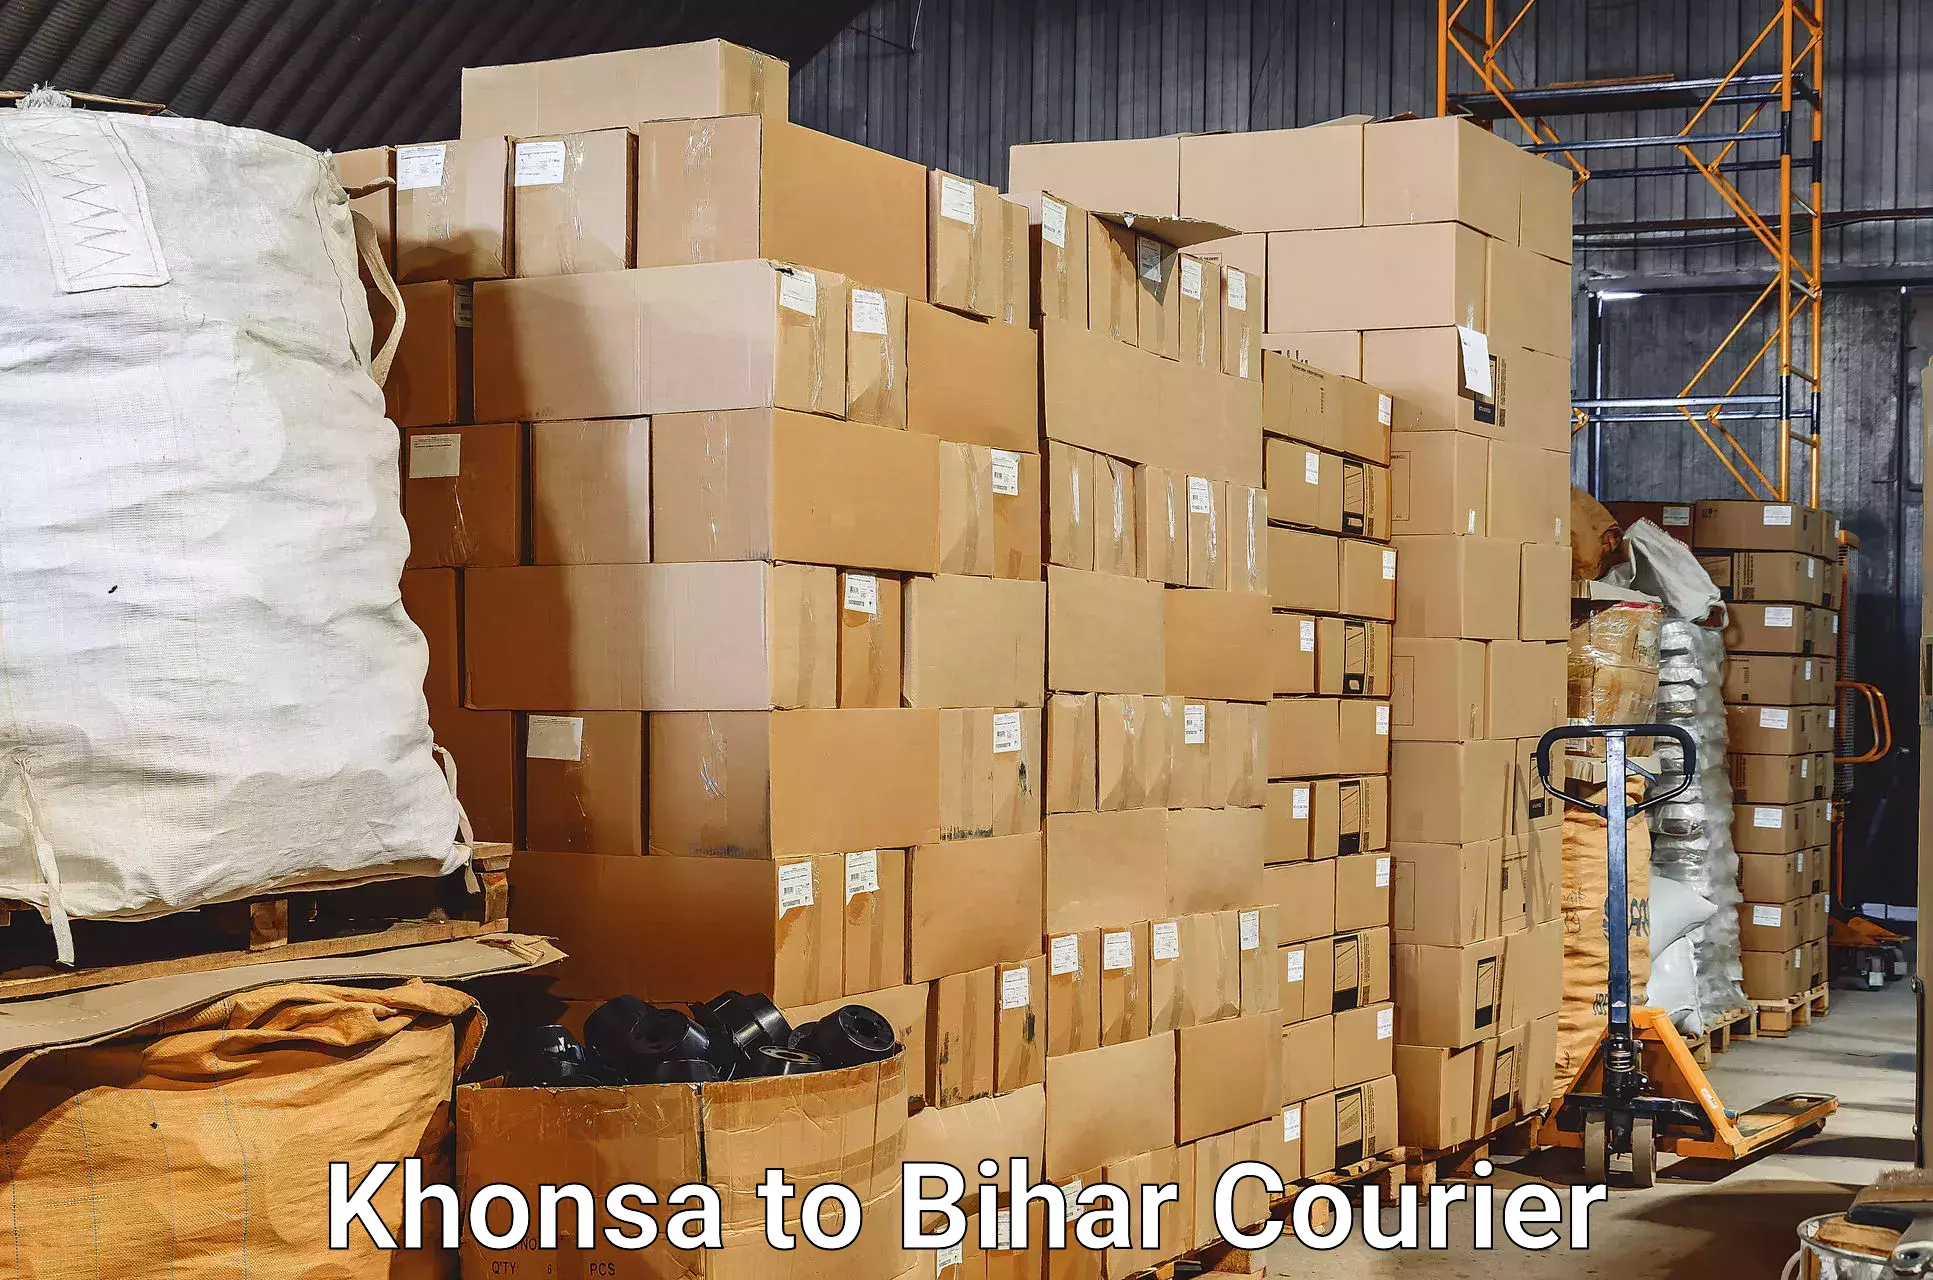 Luggage transport service Khonsa to Kudra